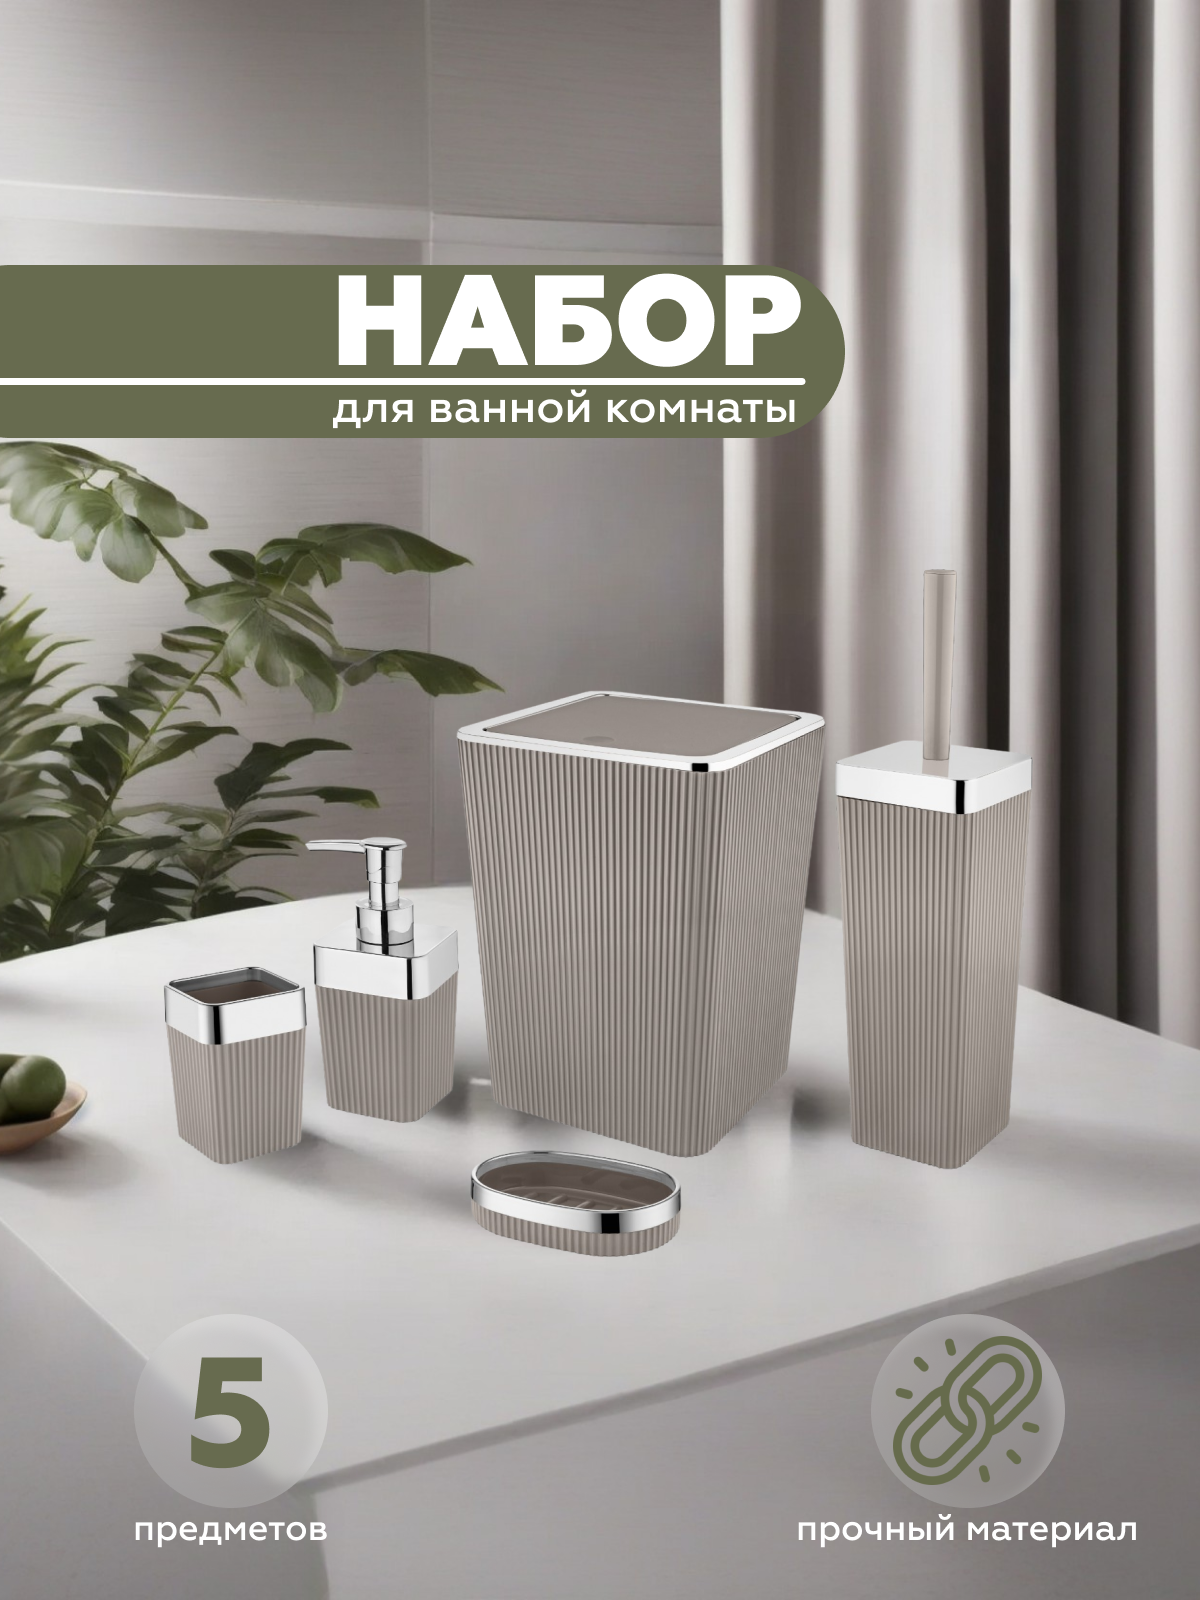 Набор для ванной комнаты 5 предметов COLUMB, Vialex, арт. CKB003-latte